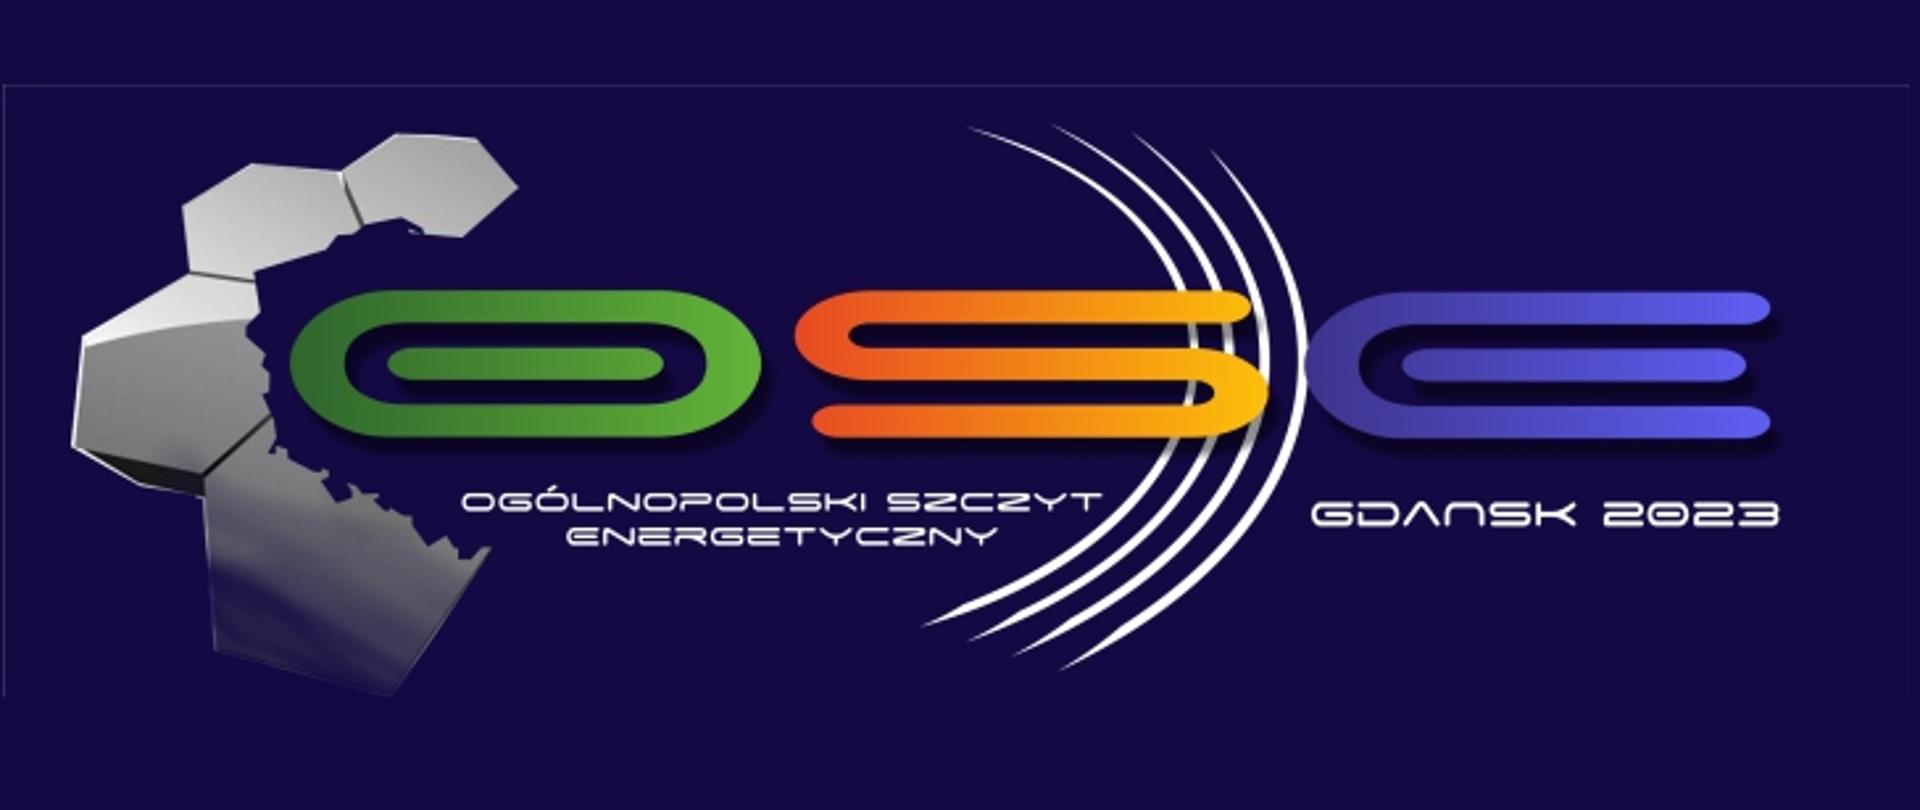 Logotyp Ogólnopolskiego Szczytu Energetycznego OSE Gdańsk 2023